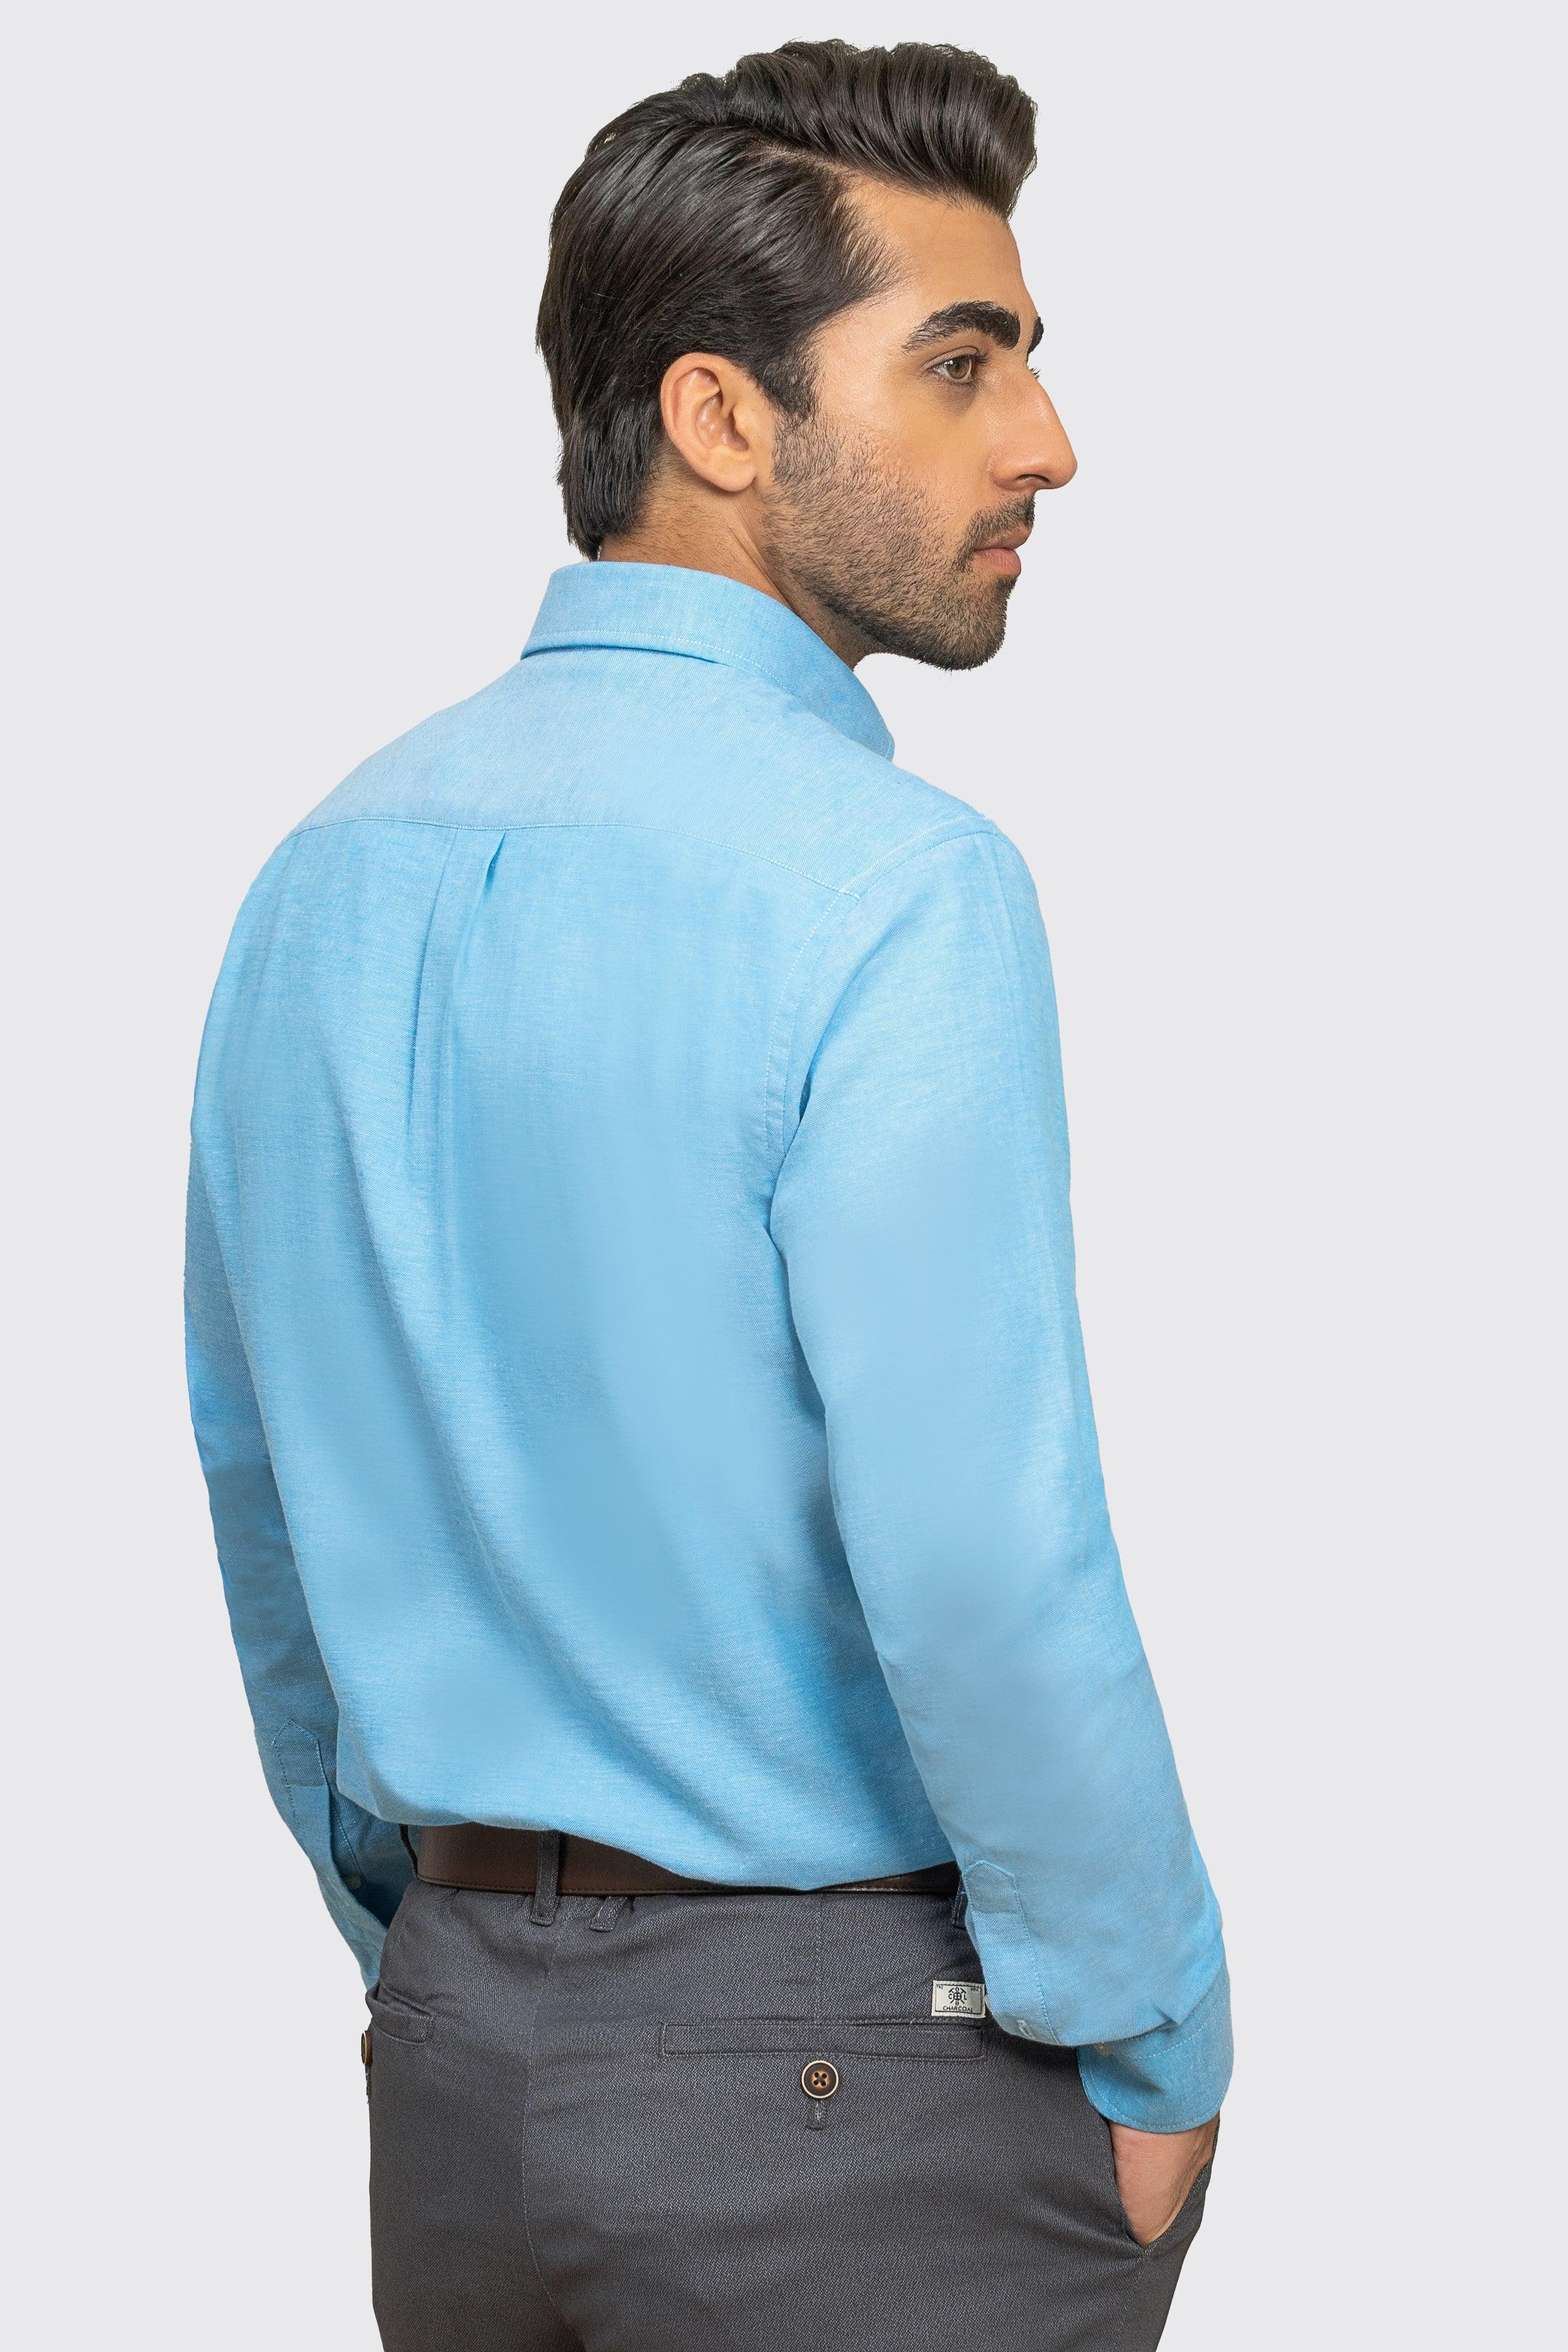 SEMI CASUAL SHIRT BLUE at Charcoal Clothing